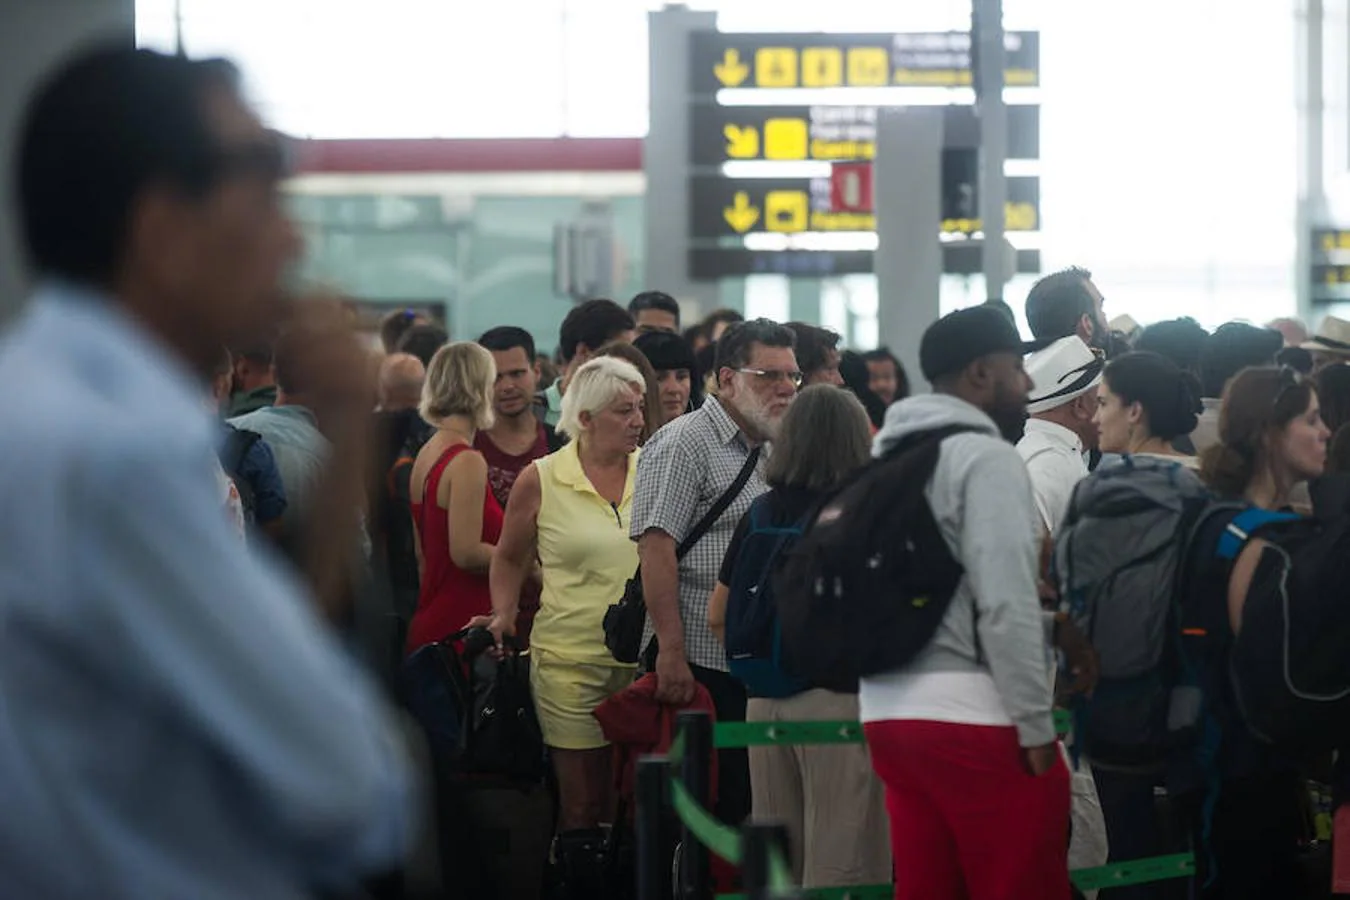 También se ha colapsado el «carril rápido» del aeropuerto de El Prat, destinado a las personas que viajan con hijos o con problemas de movilidad, donde la espera ha superado la hora y media